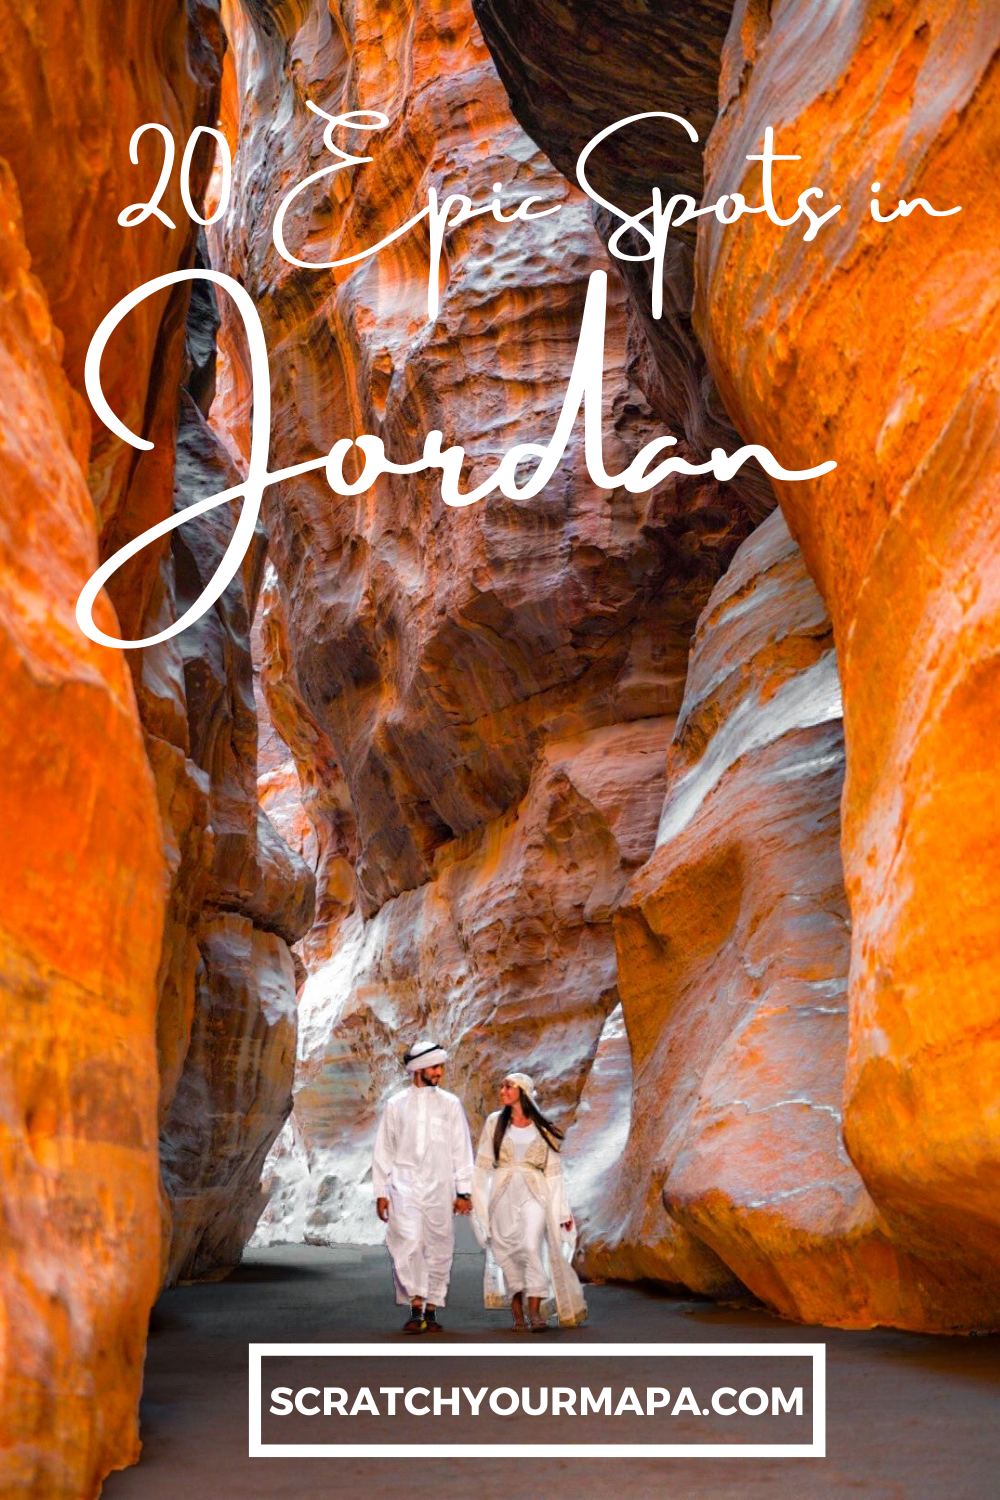 Travel in Jordan Pin